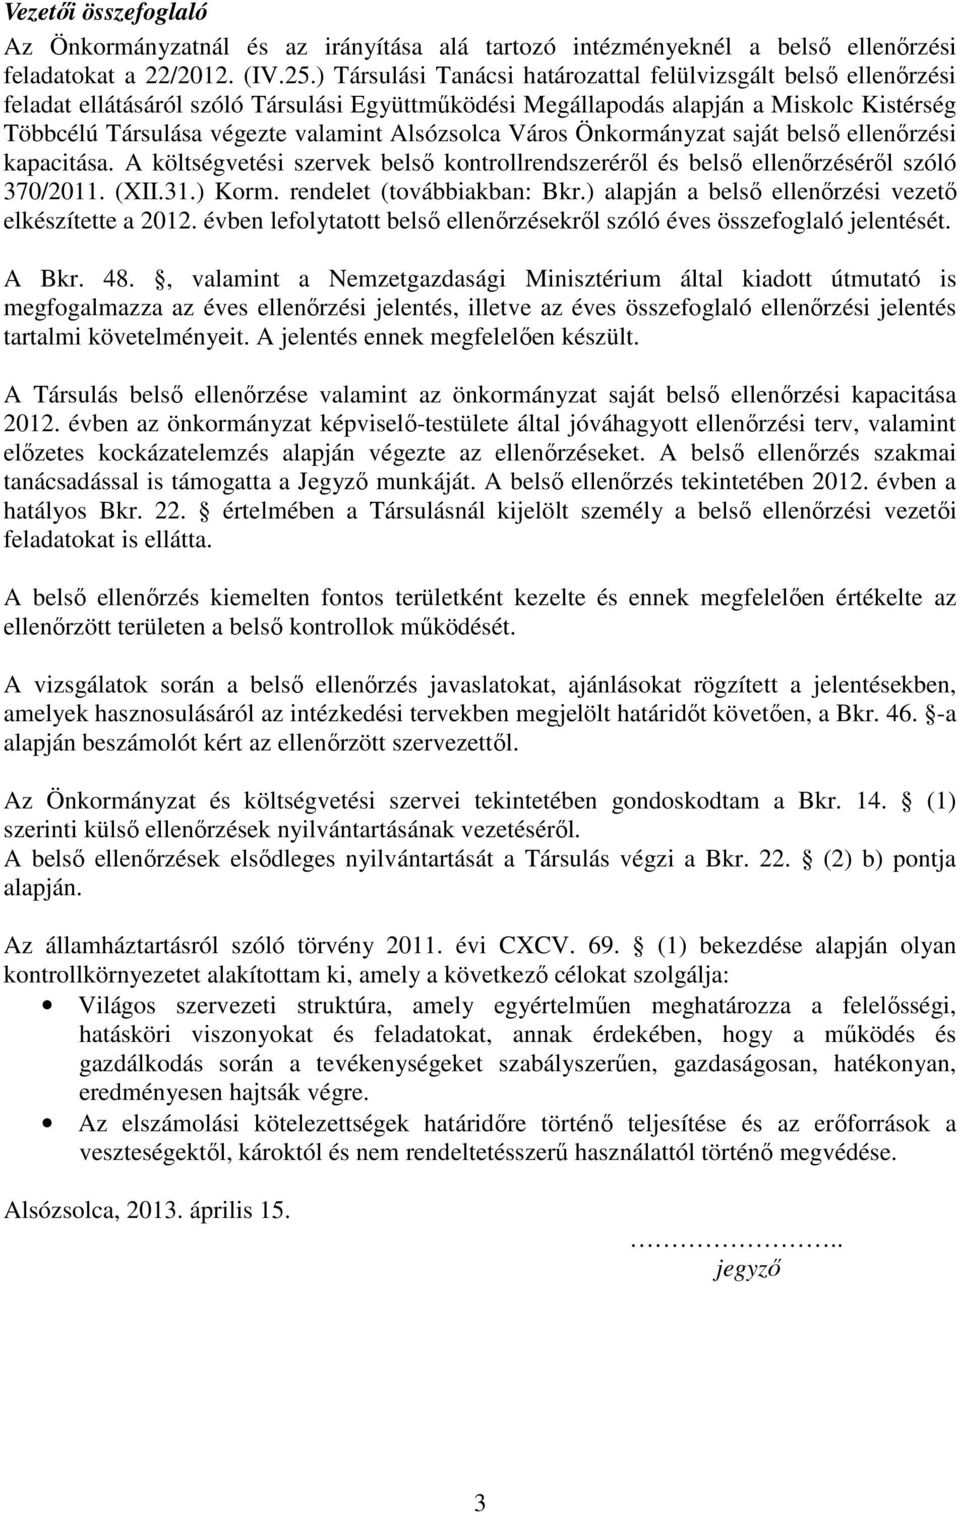 Alsózsolca Város Önkormányzat saját belső ellenőrzési kapacitása. A költségvetési szervek belső kontrollrendszeréről és belső ellenőrzéséről szóló 370/2011. (XII.31.) Korm.